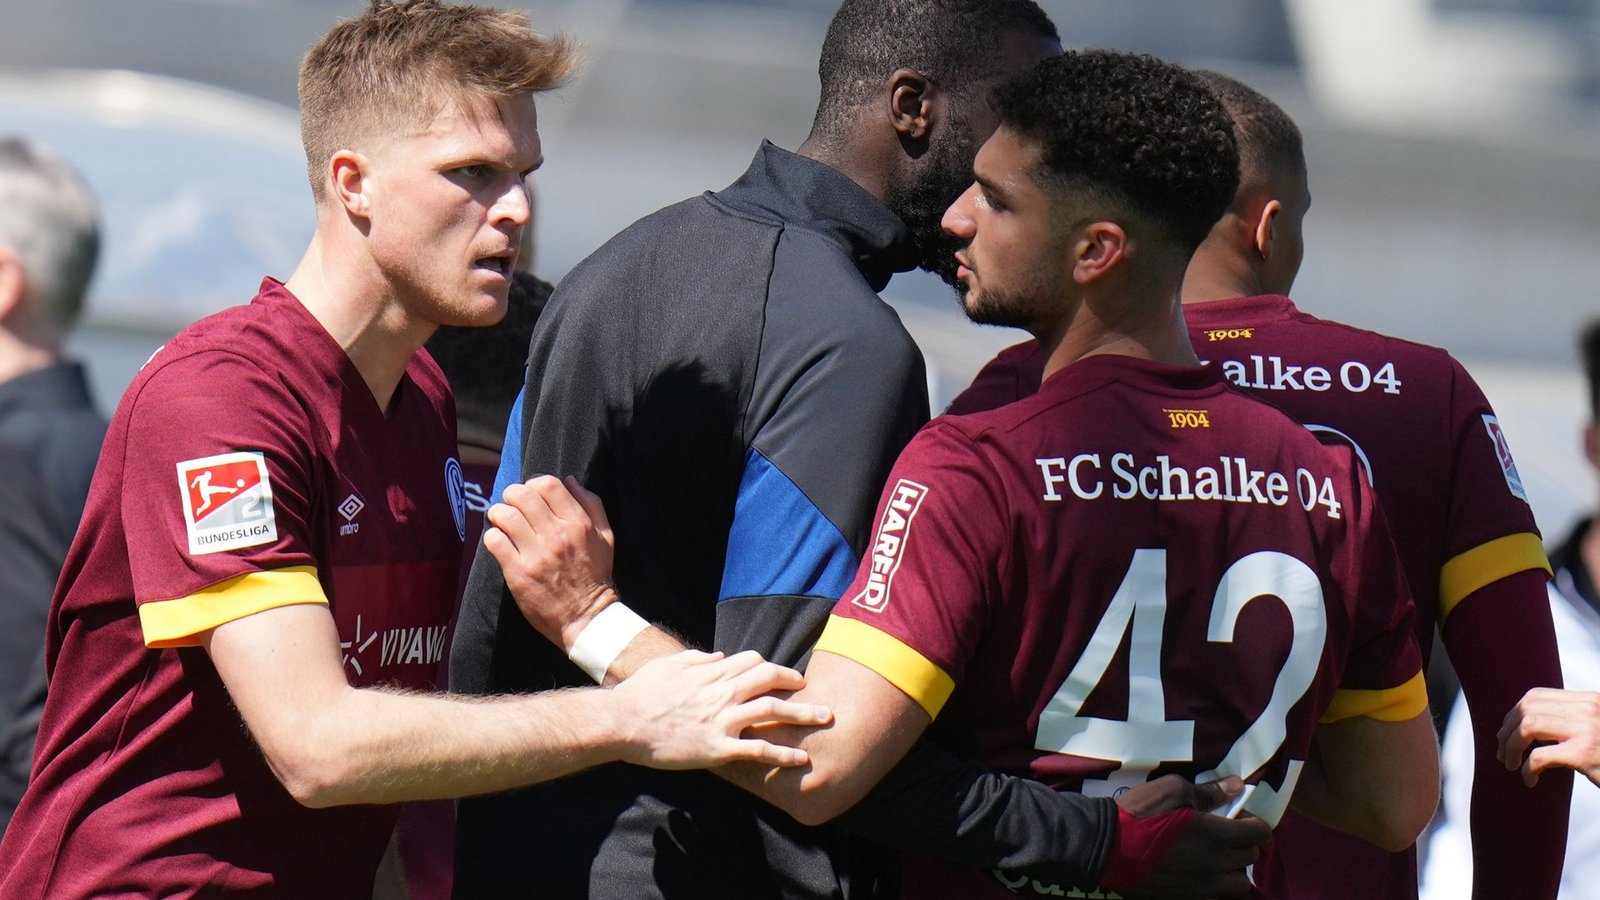 Schalkes Marius Bülter (l) feiert ein weiteres Tor gegen Darmstadt 98 mit Kerim Calhanoglu.Foto: Thomas Frey/dpa